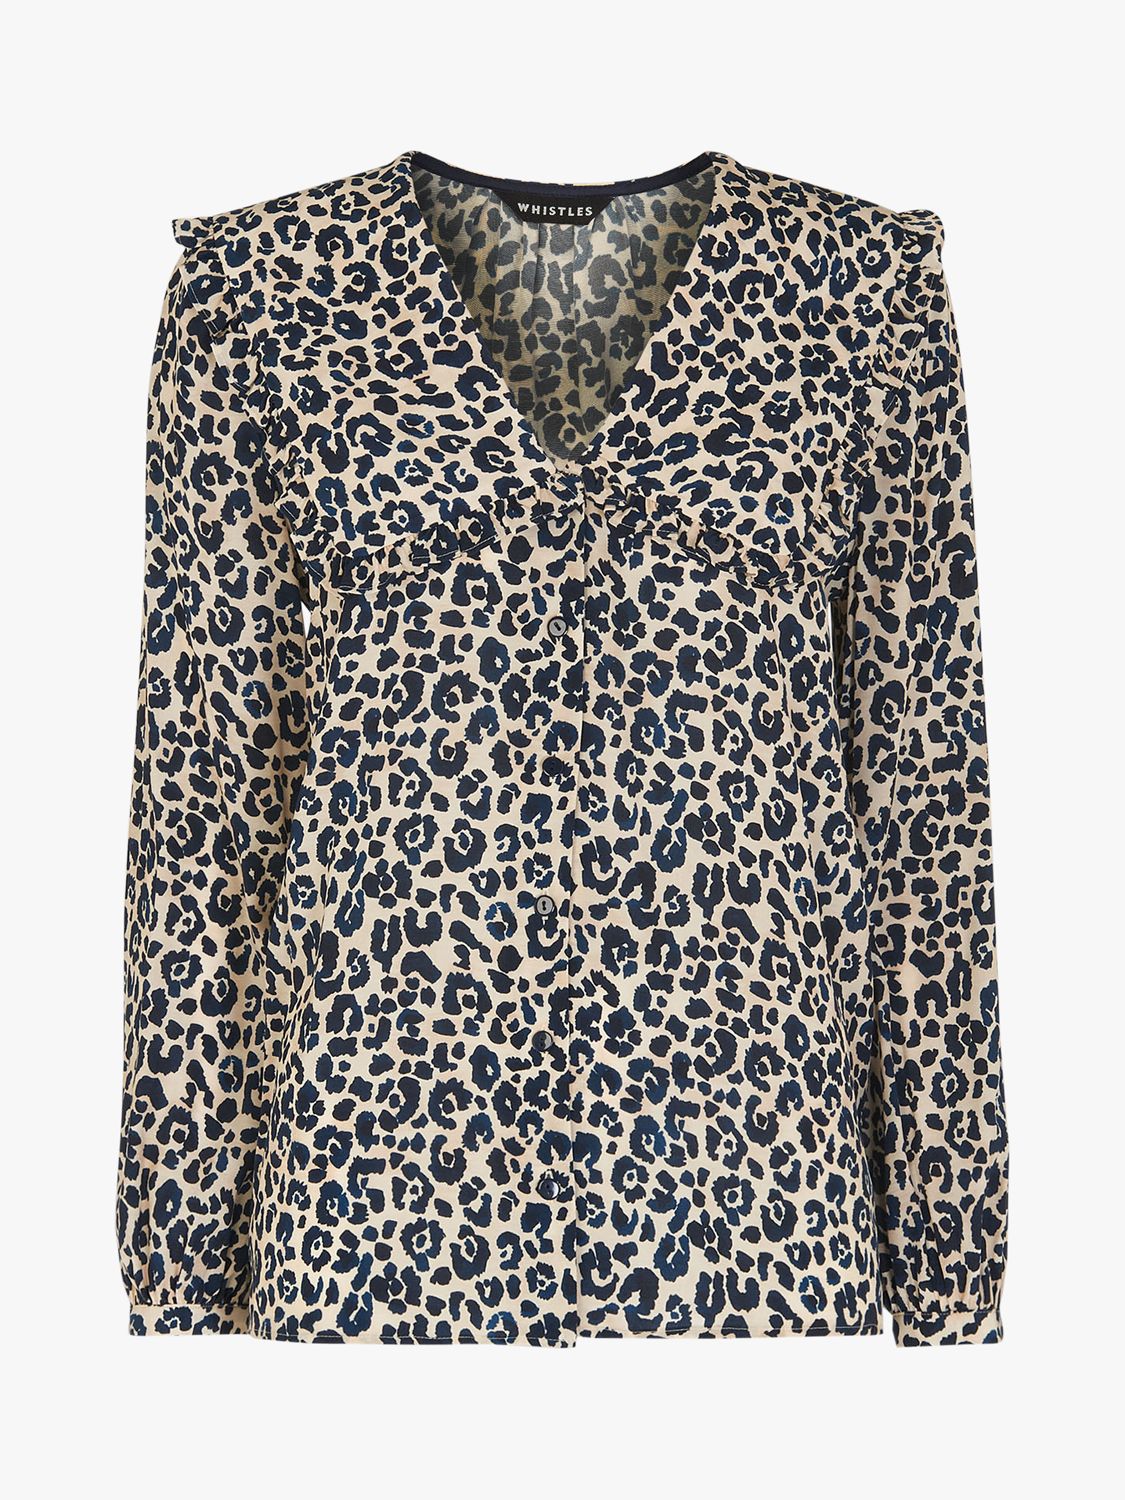 Whistles Cheetah Print Collar Blouse, Multi at John Lewis & Partners